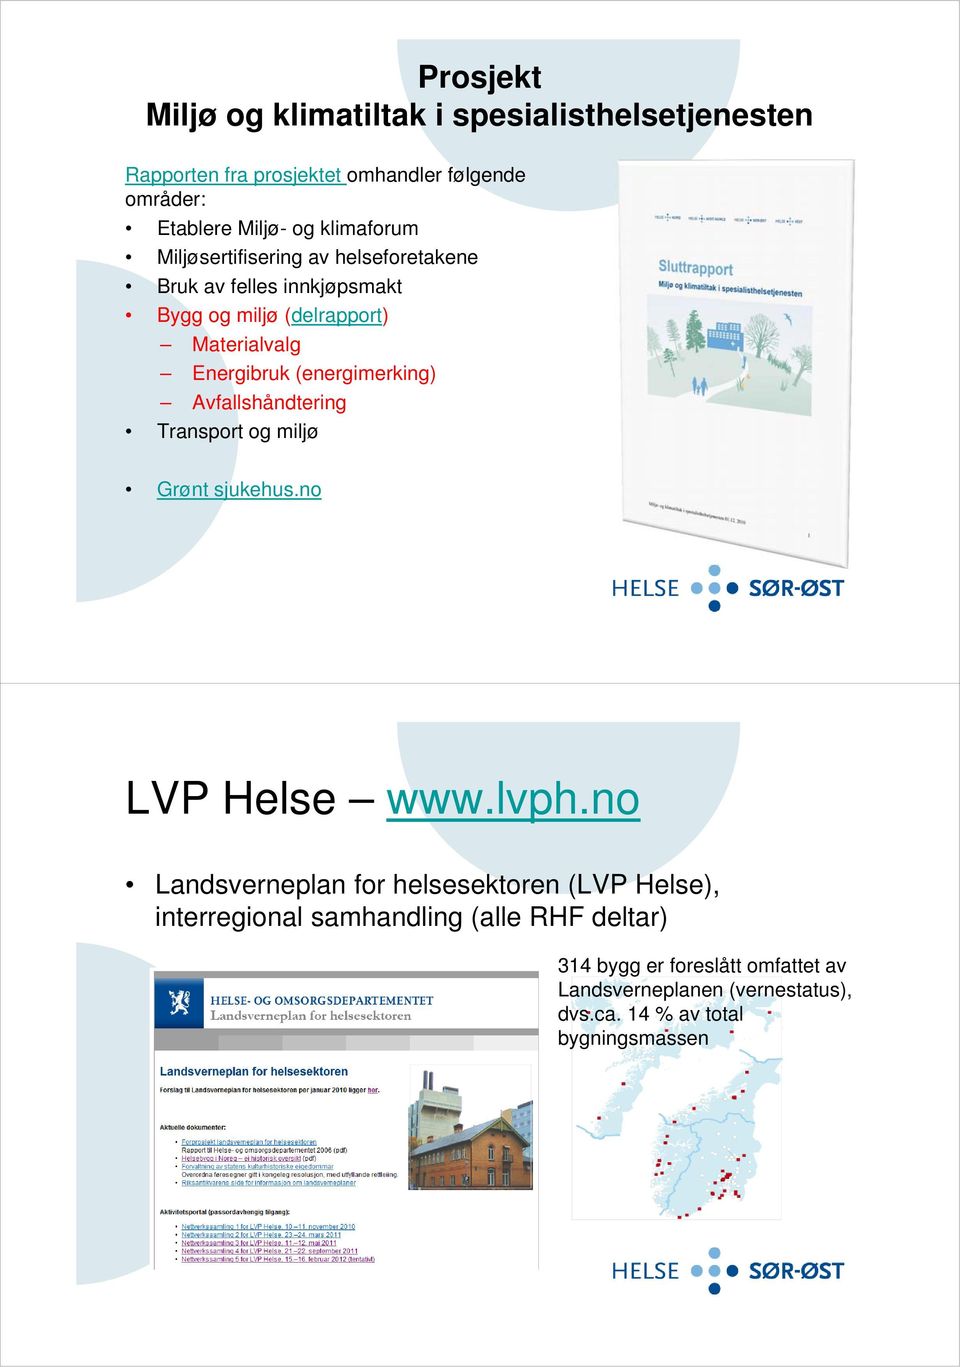 (energimerking) Avfallshåndtering Transport og miljø Grønt sjukehus.no LVP Helse www.lvph.